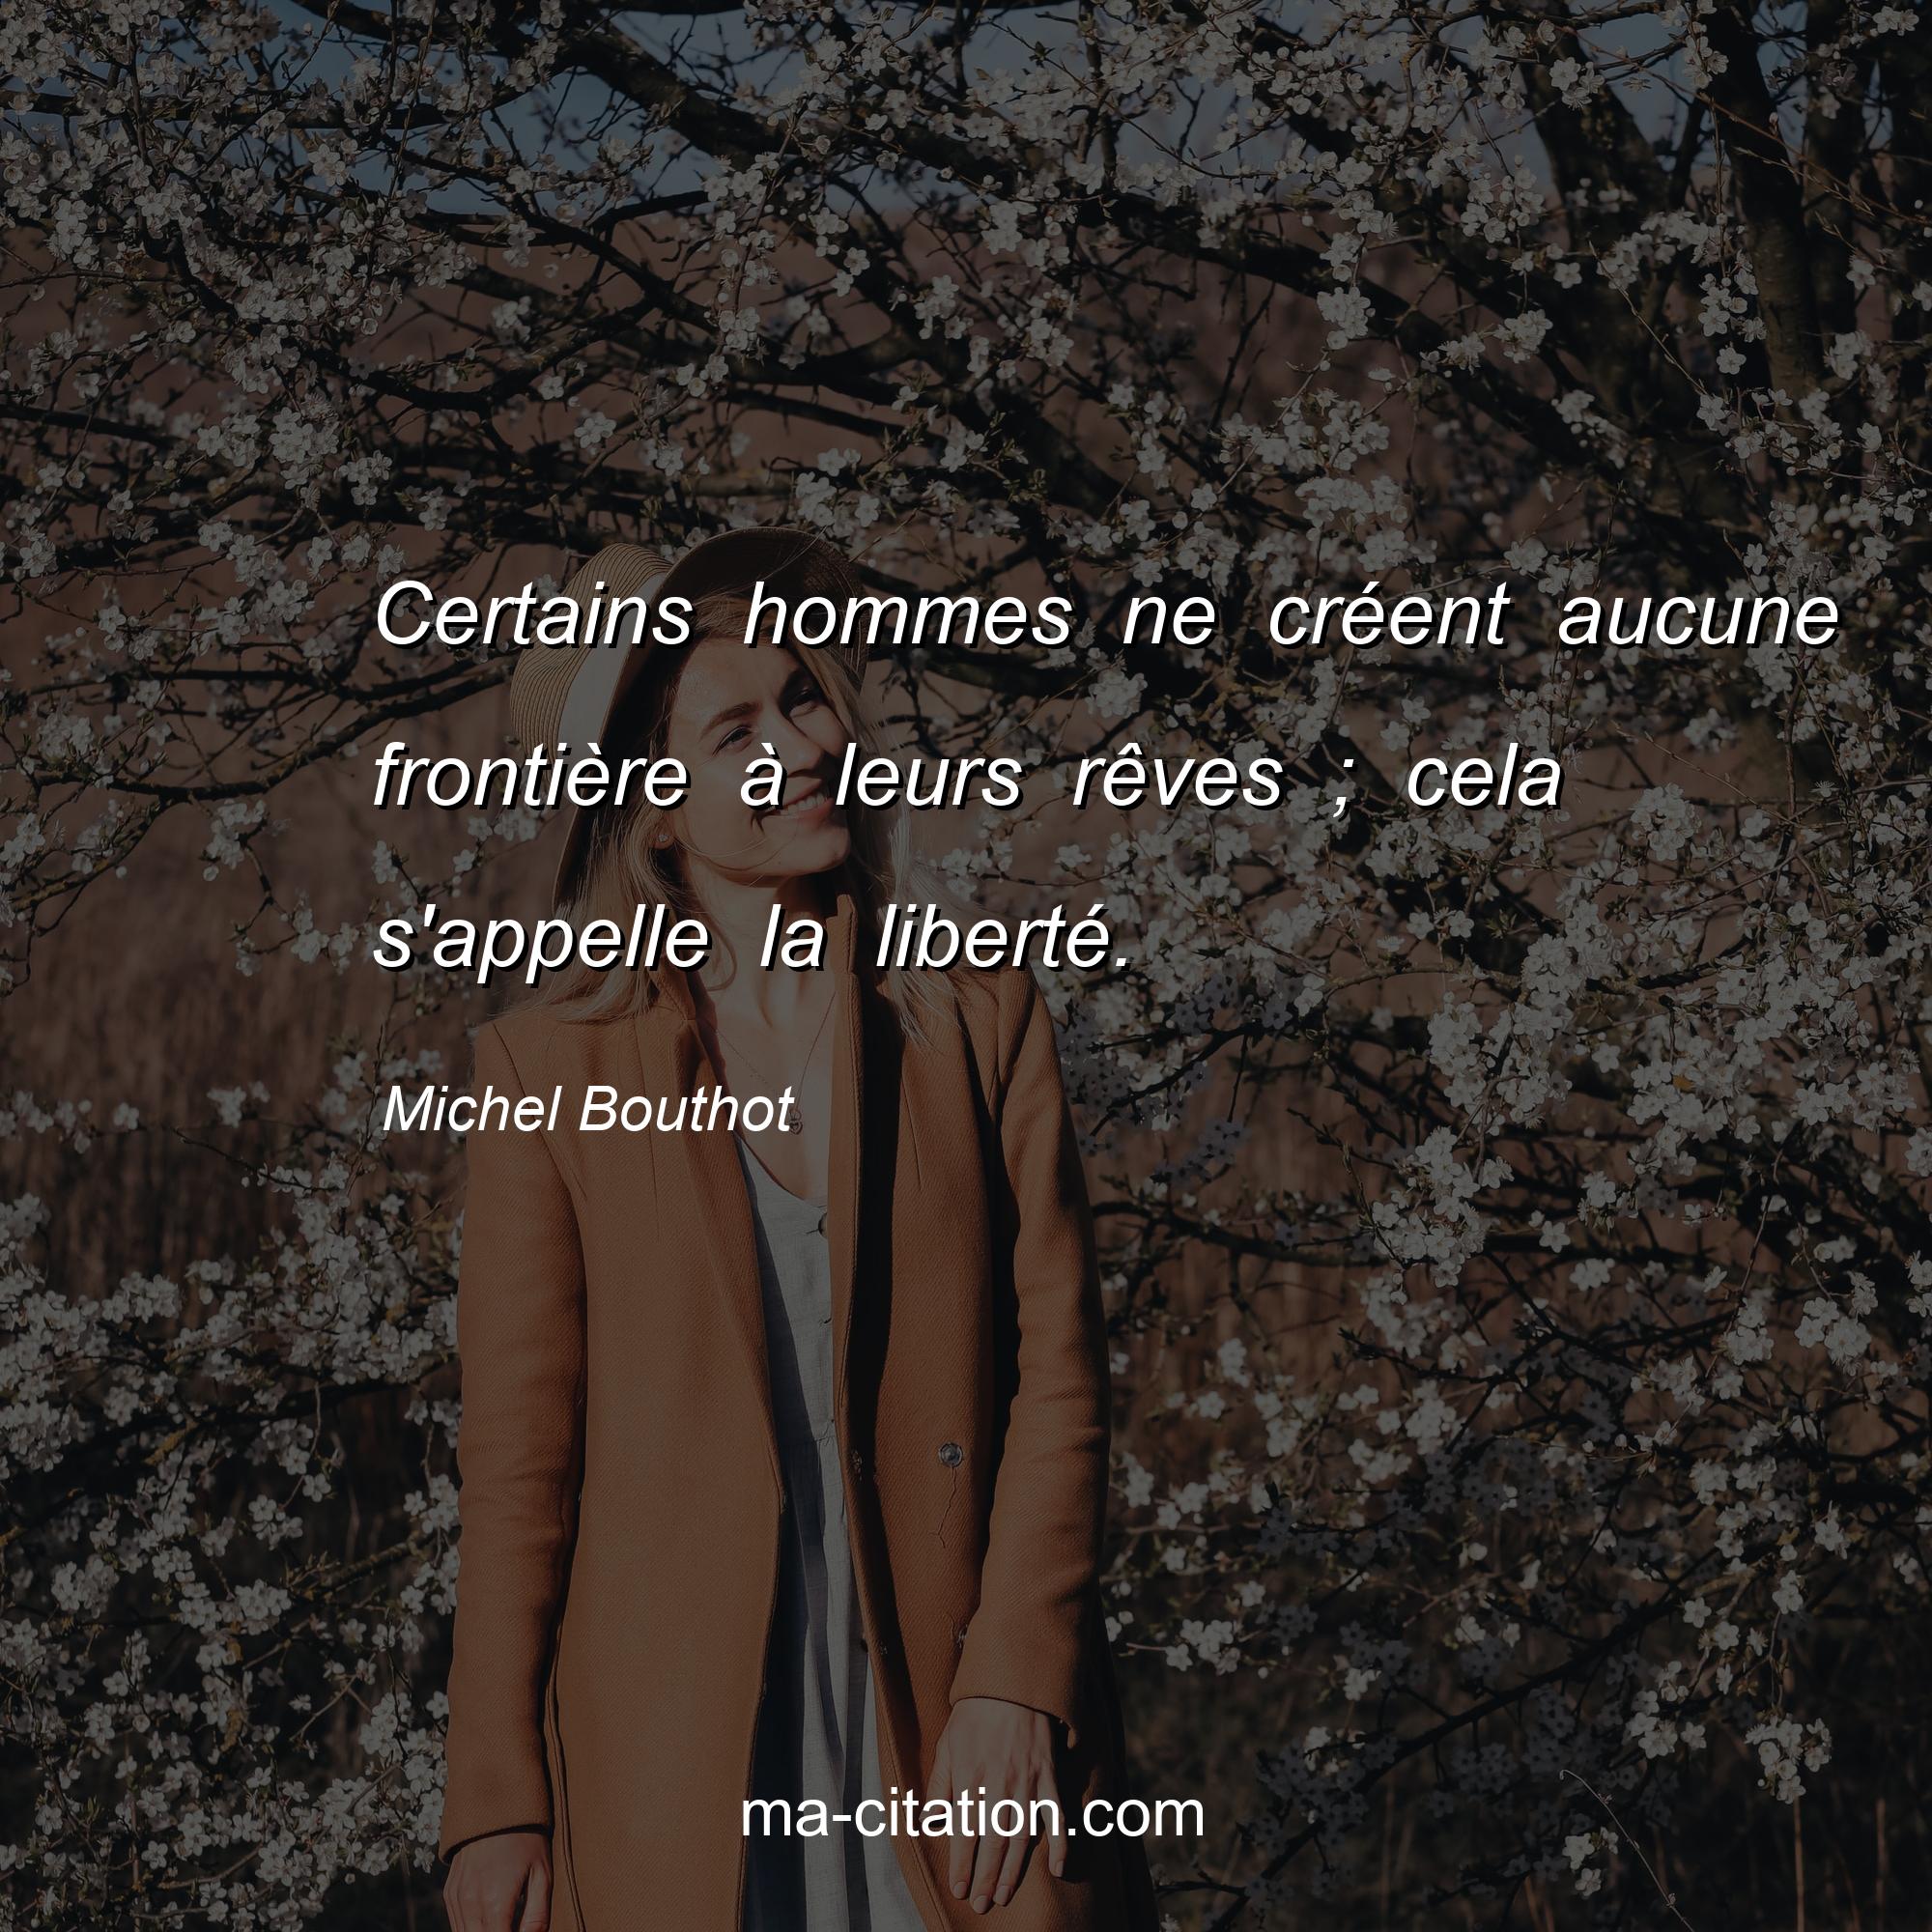 Michel Bouthot : Certains hommes ne créent aucune frontière à leurs rêves ; cela s'appelle la liberté.